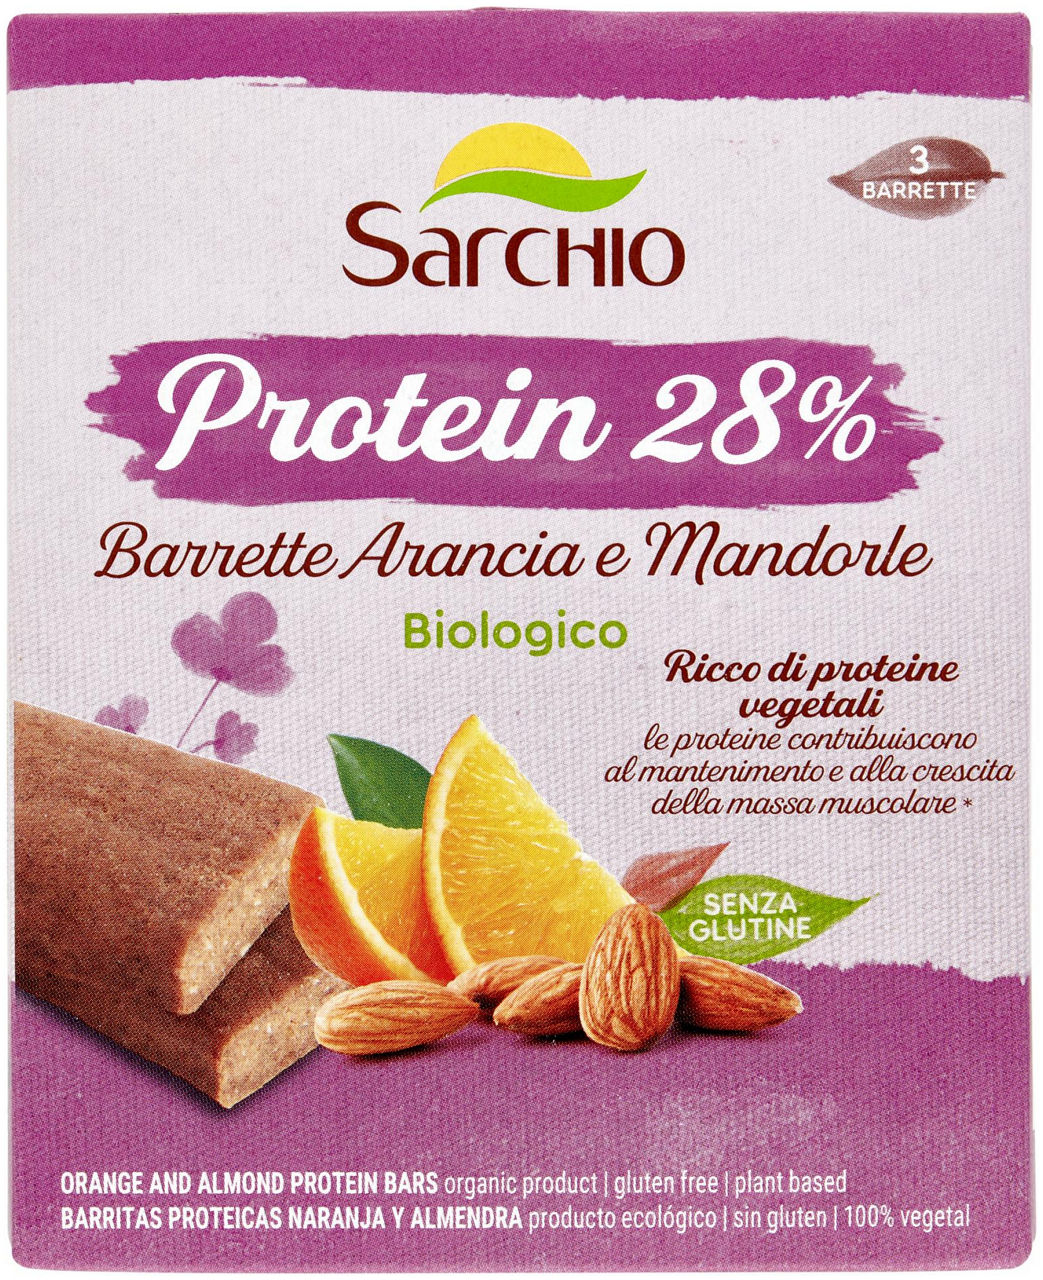 Sg-barrette protein arancia e mandorle bio sarchio g135